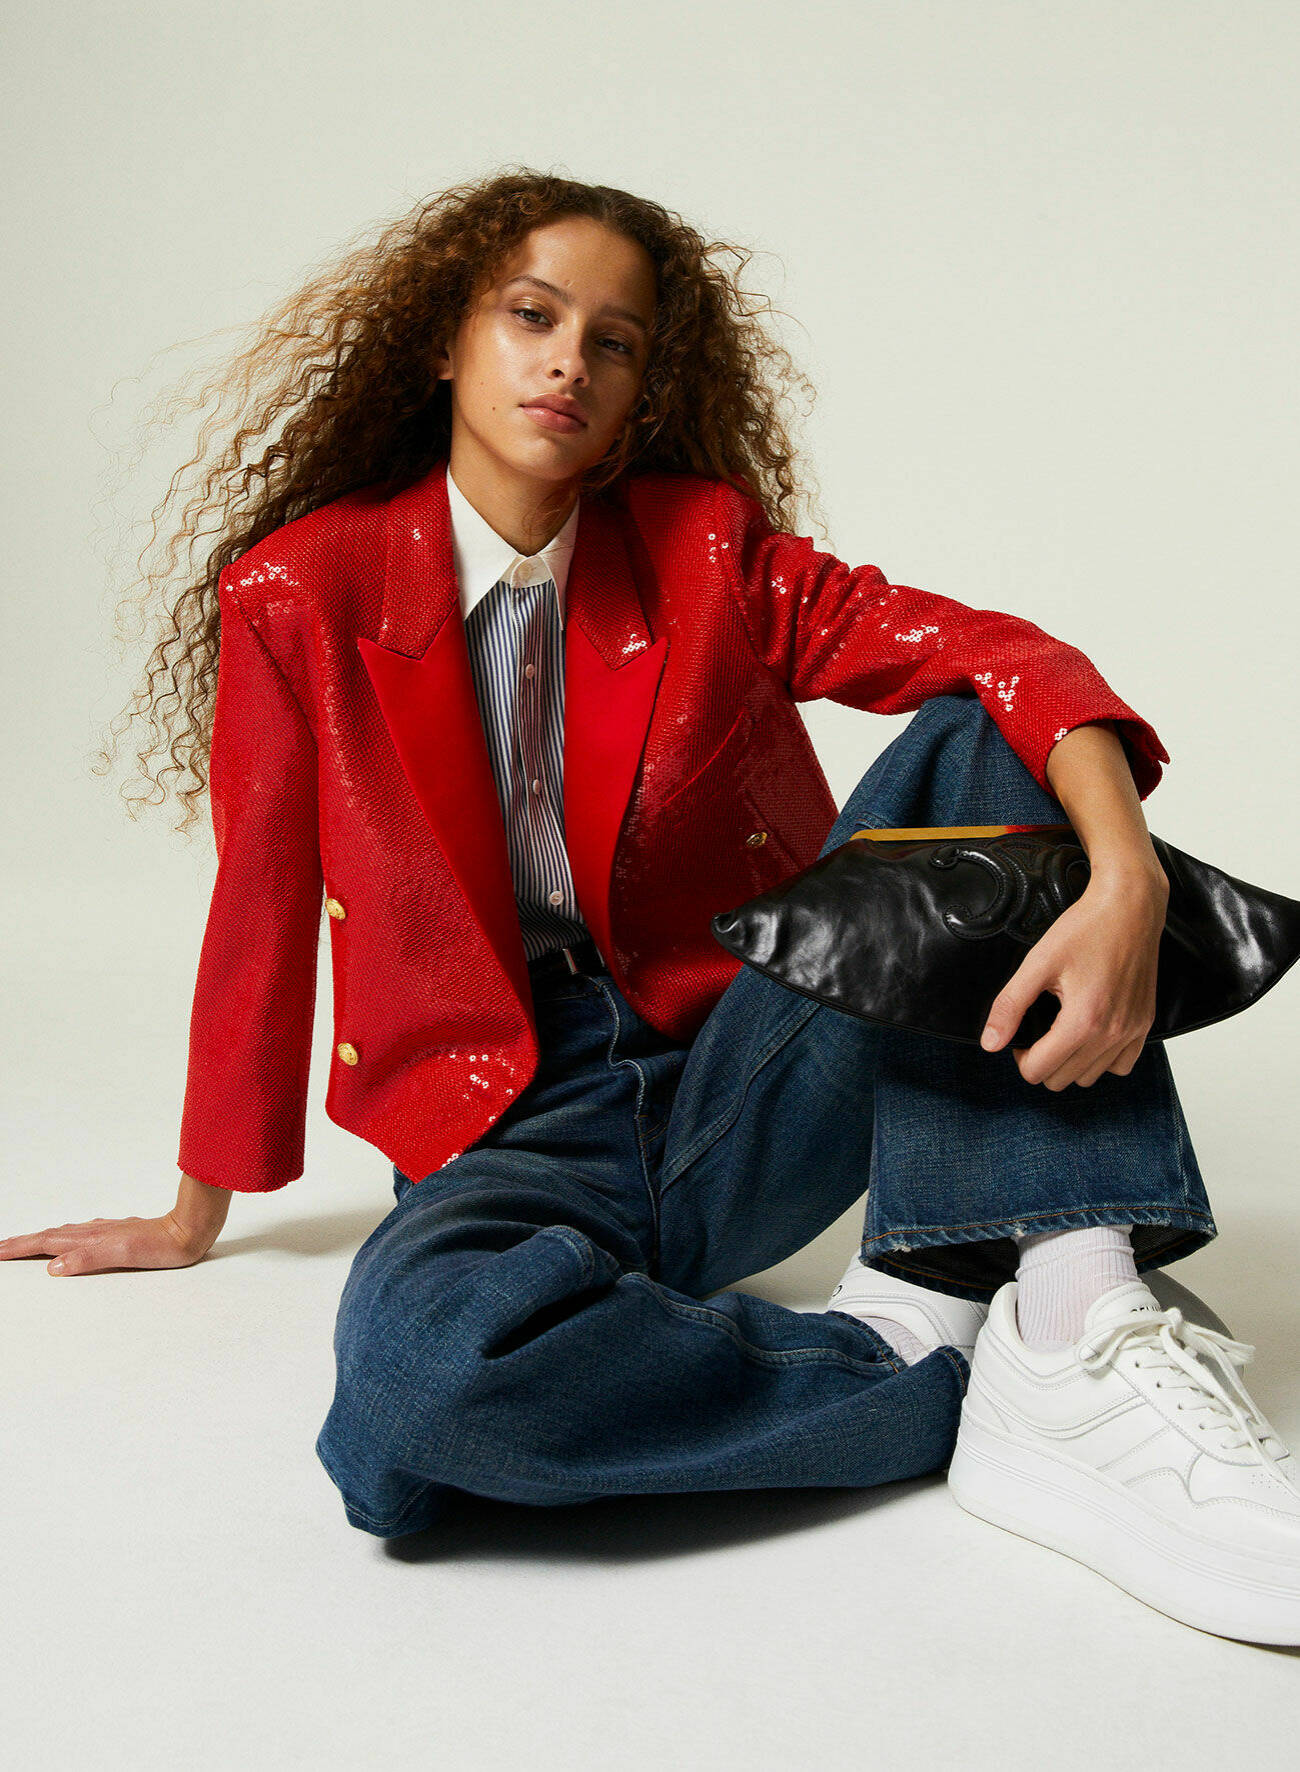 Modellen Dyanira har på sig en röd kavaj med paljetter, mörkblå jeans och vita sneakers, allt från Celine by Hedi Slimane